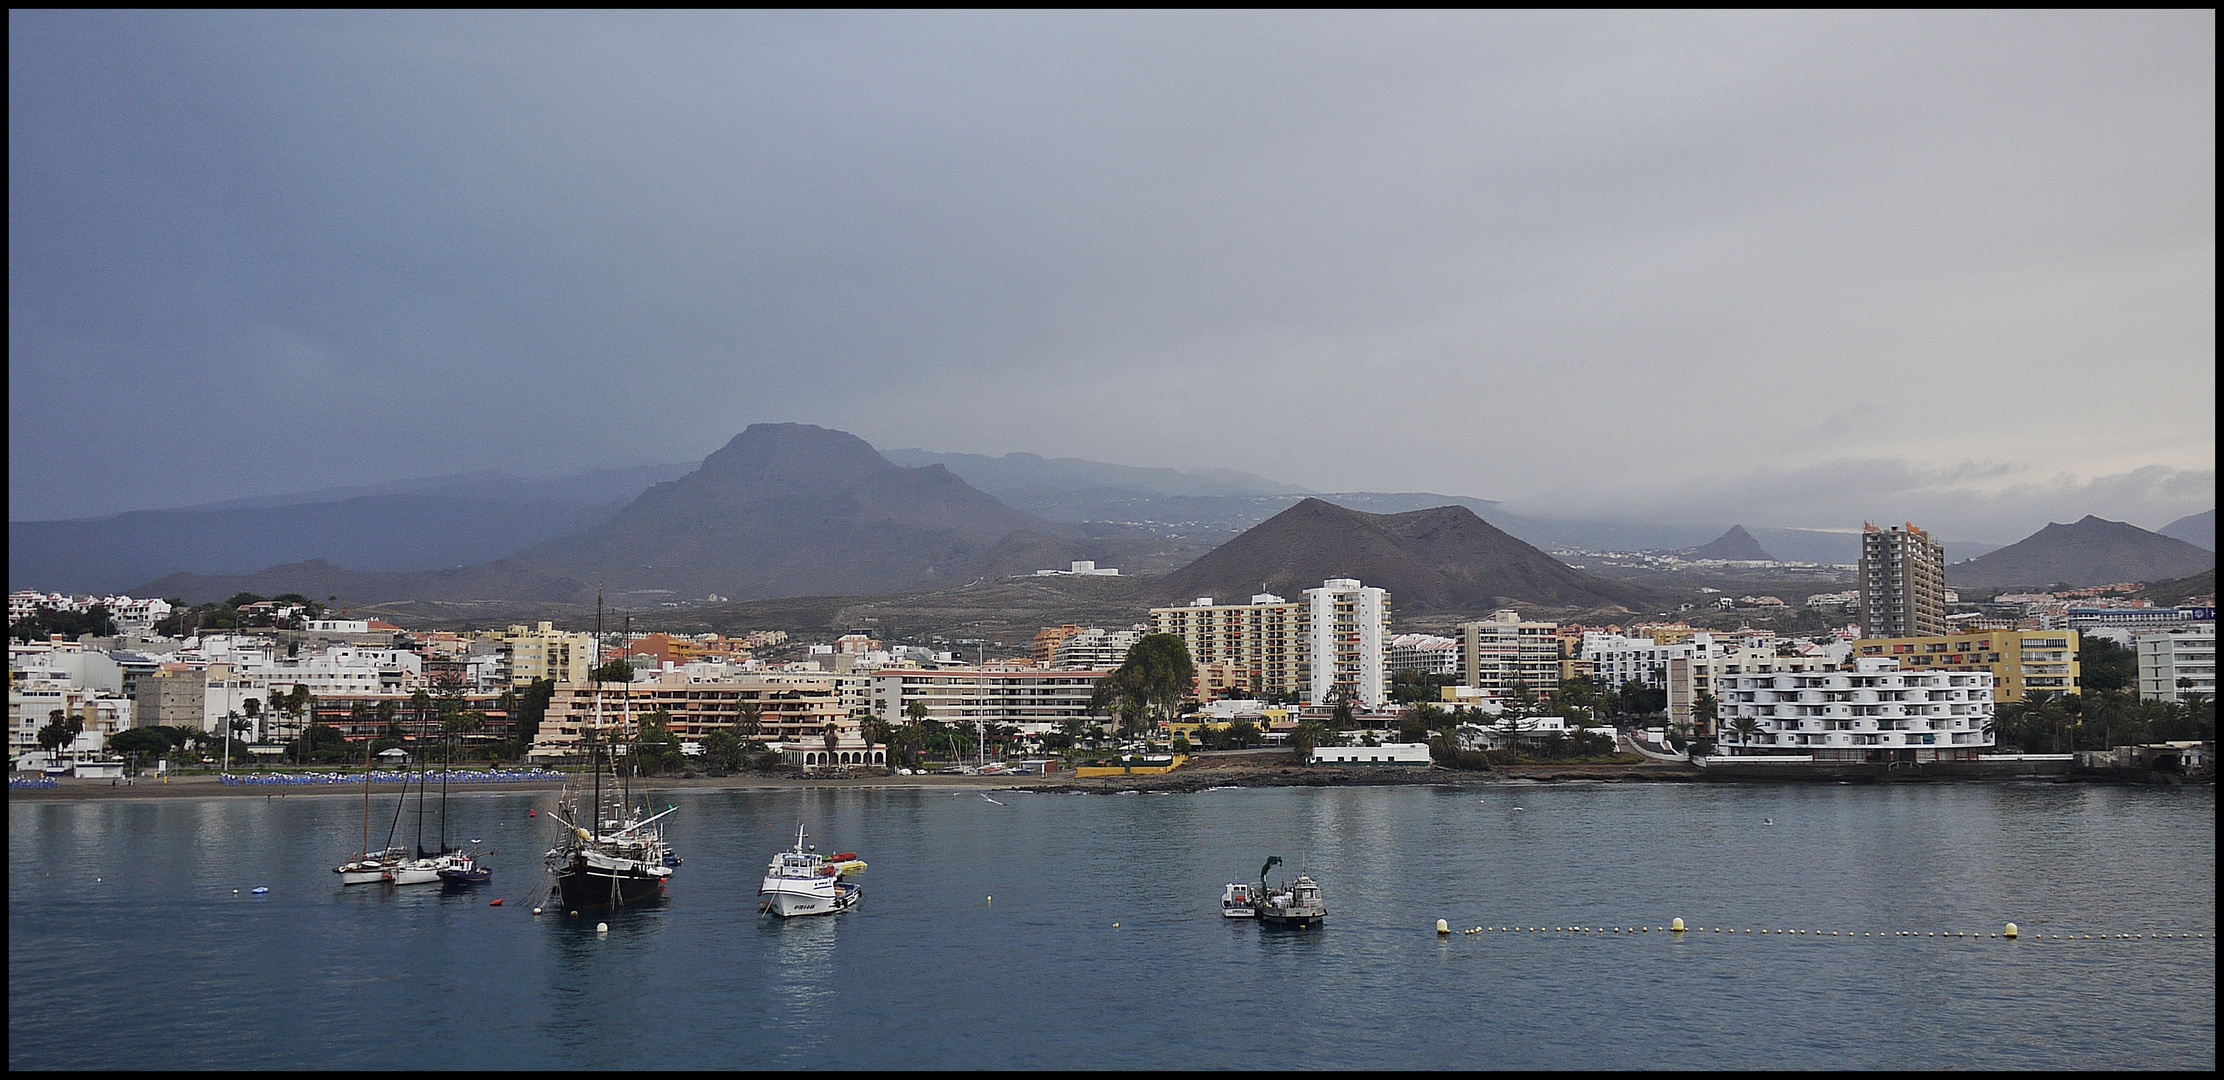 Im Hafen von Tenerife